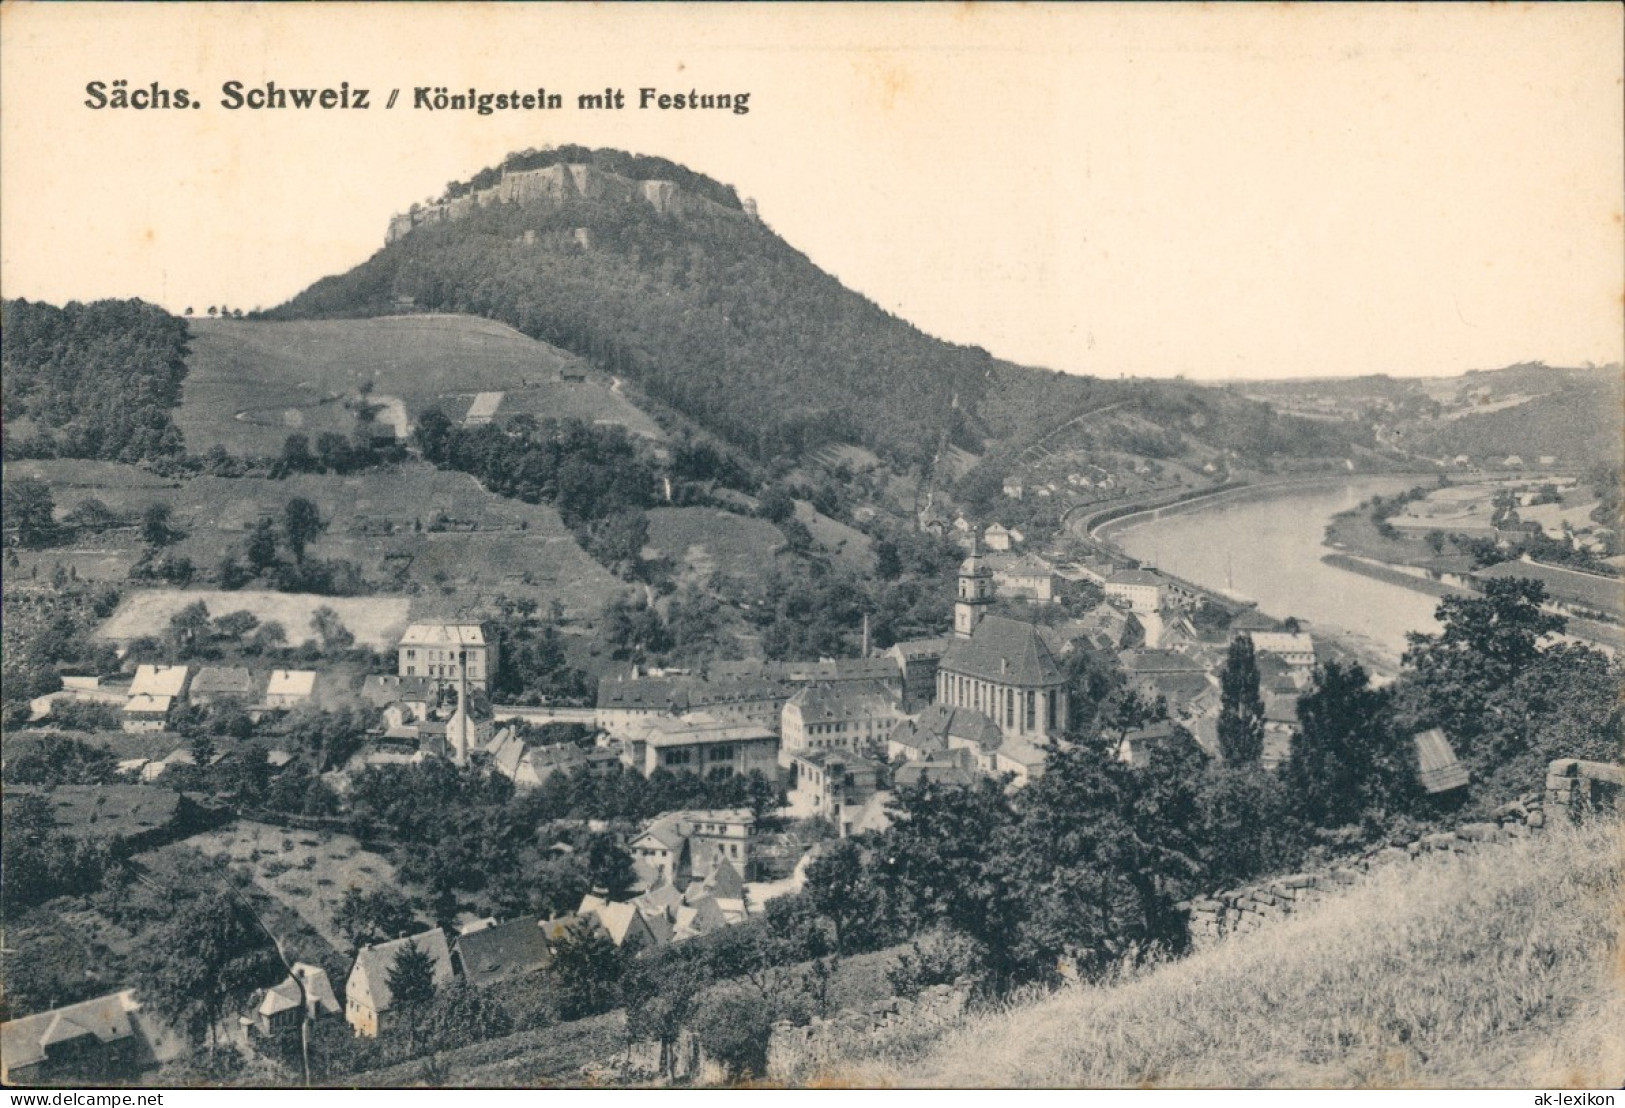 Ansichtskarte Königstein (Sächsische Schweiz) Blick Auf Die Stadt 1926 - Koenigstein (Saechs. Schw.)